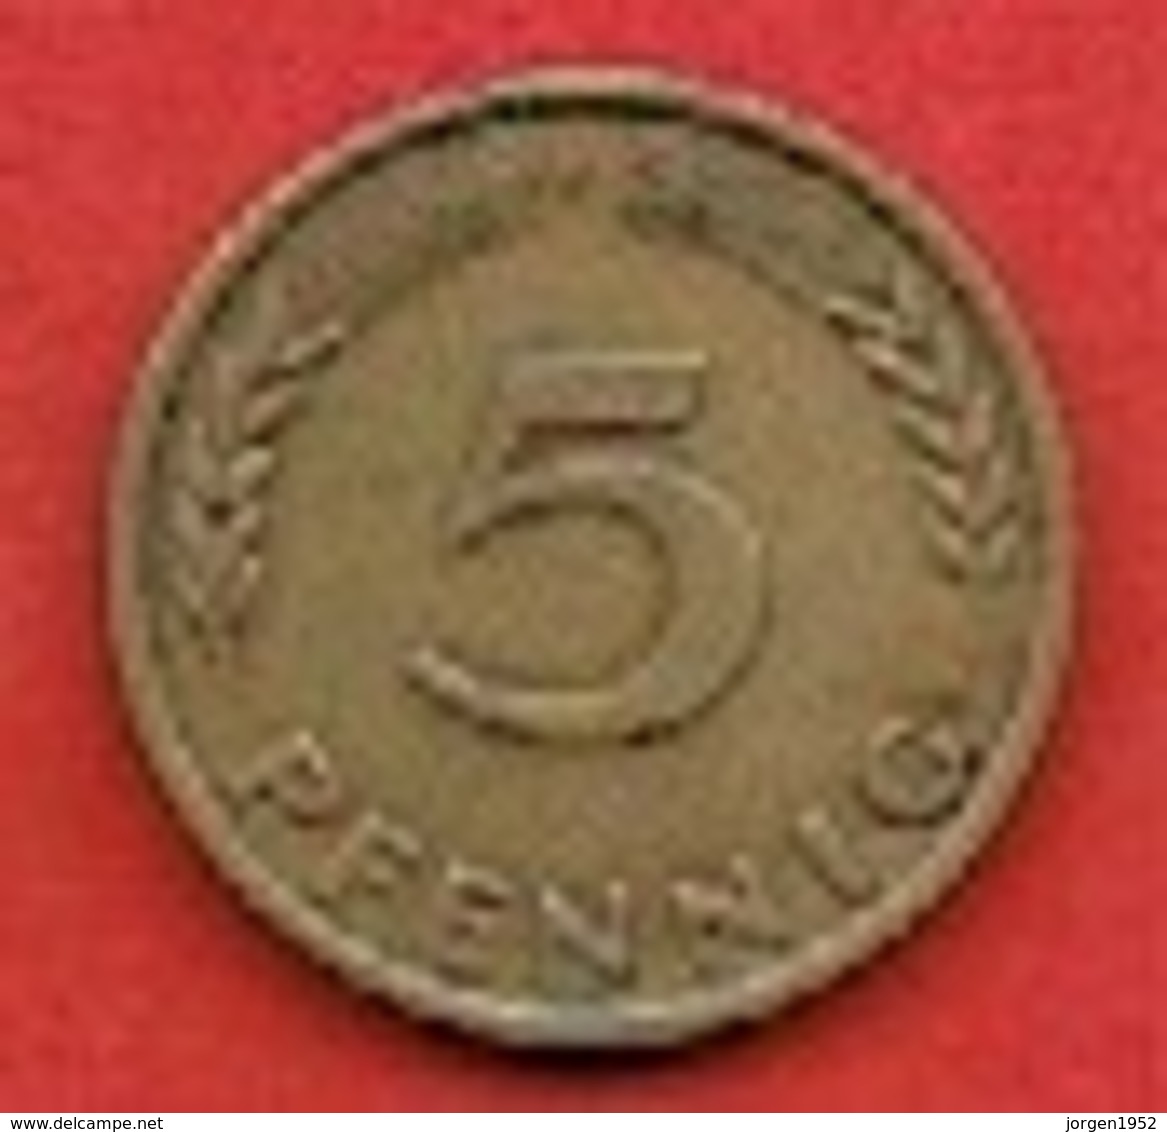 GERMANY #  5 PFENNING FROM 1950 - 5 Pfennig